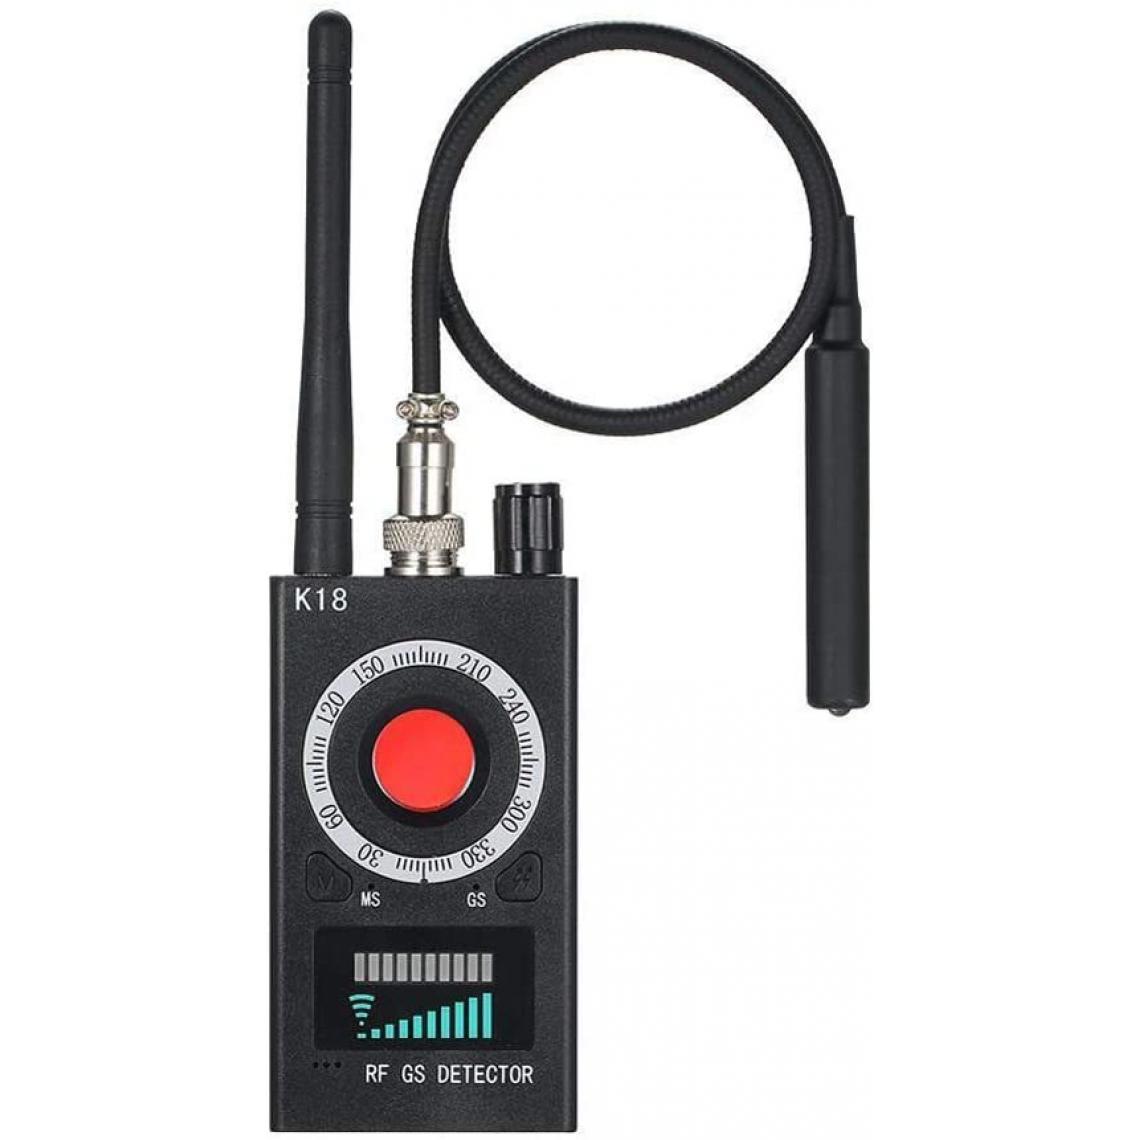 Chrono - K18 Anti-détecteur Multifonctions, Mini caméra espionne Audio GSM Finder GPS Signal Lens RF Locatorï¼noirï¼ - Autres accessoires smartphone